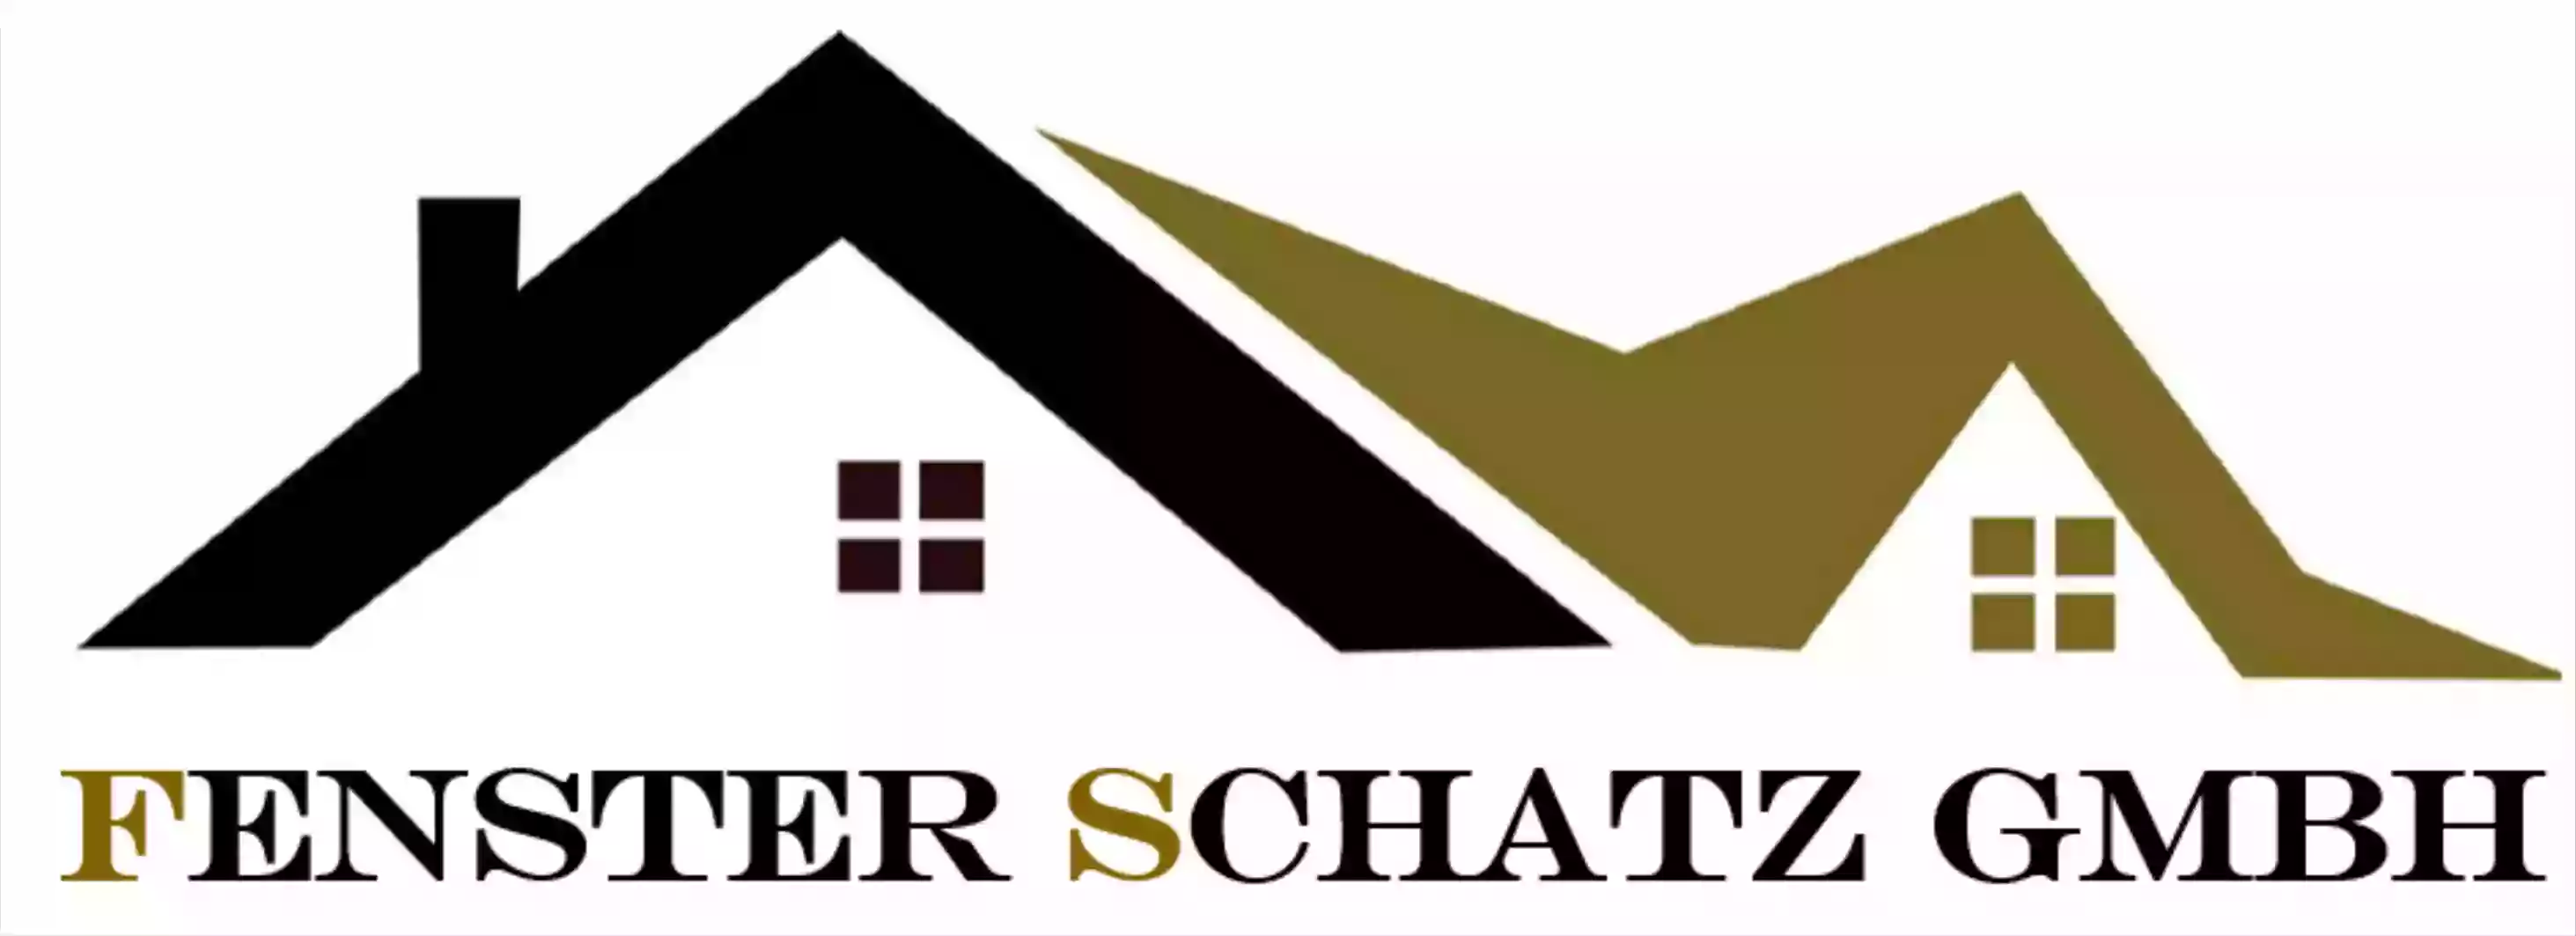 Fenster Schatz GmbH